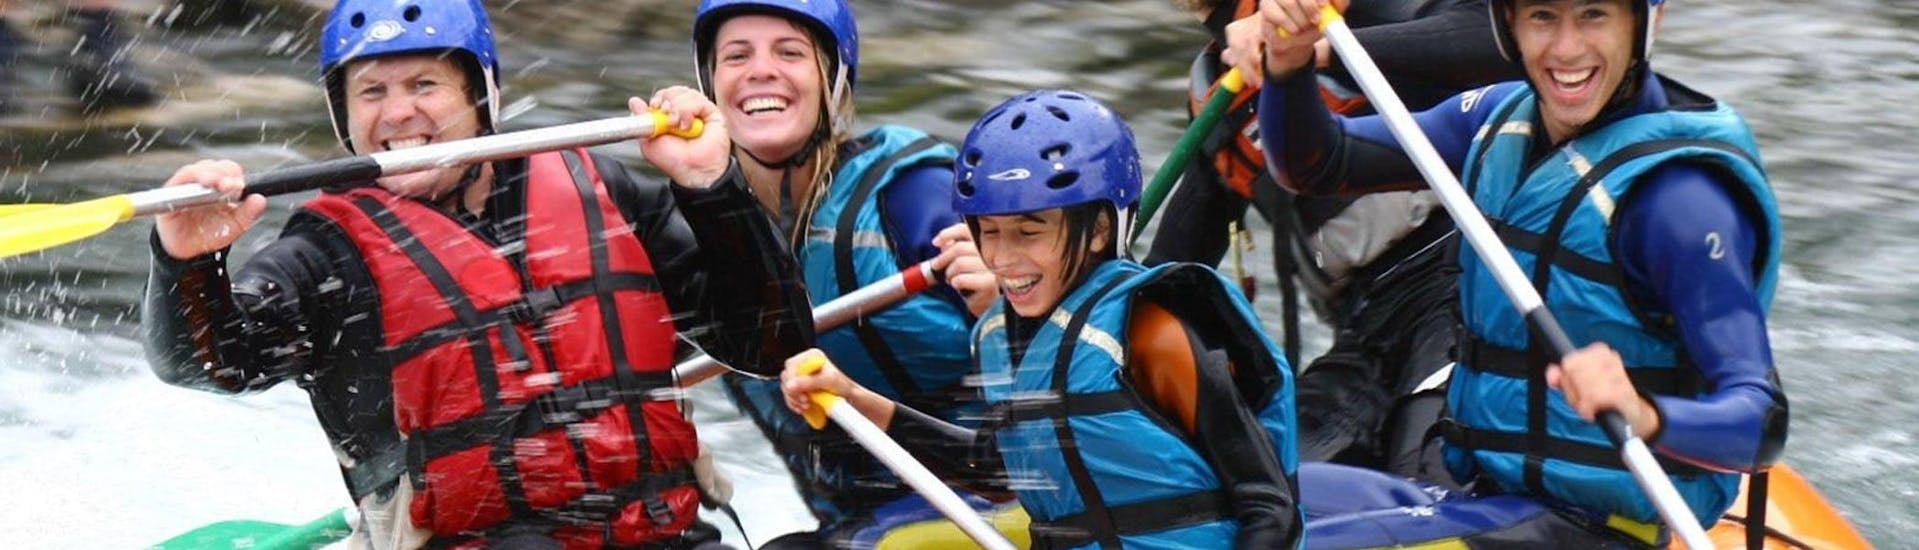 Une famille s'amuse pendant leur activité de Rafting sur le Gave de Pau - Classique avec Ohlala Eaux Vives.